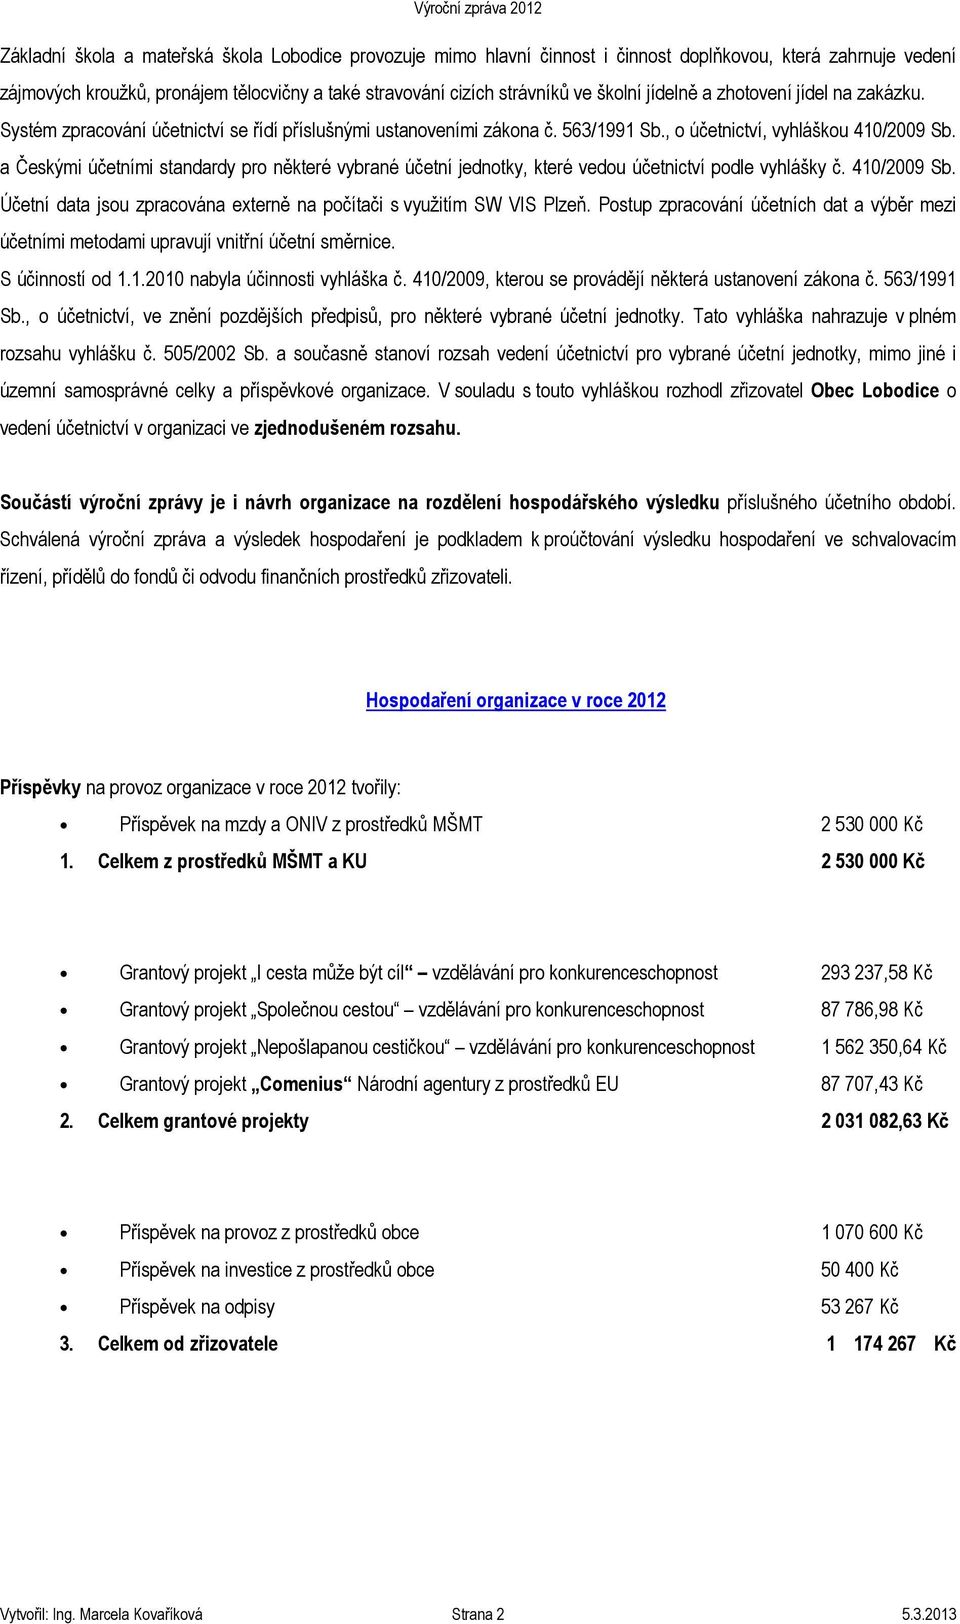 a Českými účetními standardy pro některé vybrané účetní jednotky, které vedou účetnictví podle vyhlášky č. 410/2009 Sb. Účetní data jsou zpracována externě na počítači s využitím SW VIS Plzeň.